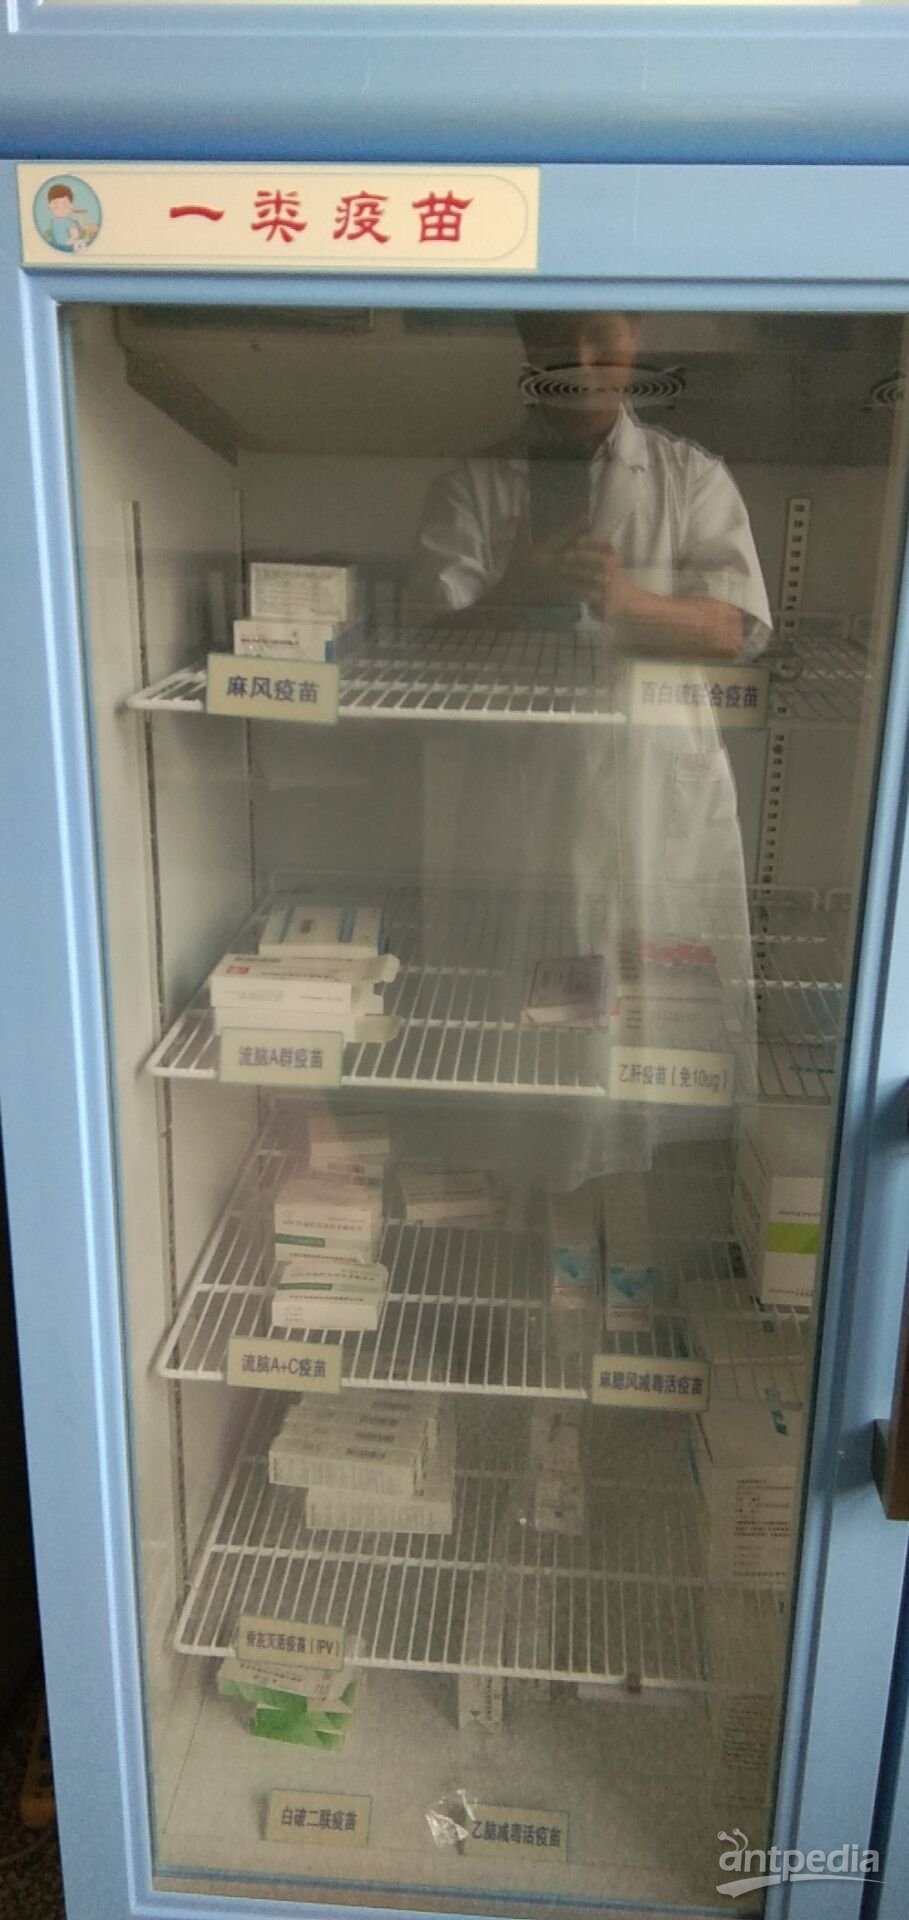 10-25度农药标准物质保存冰箱